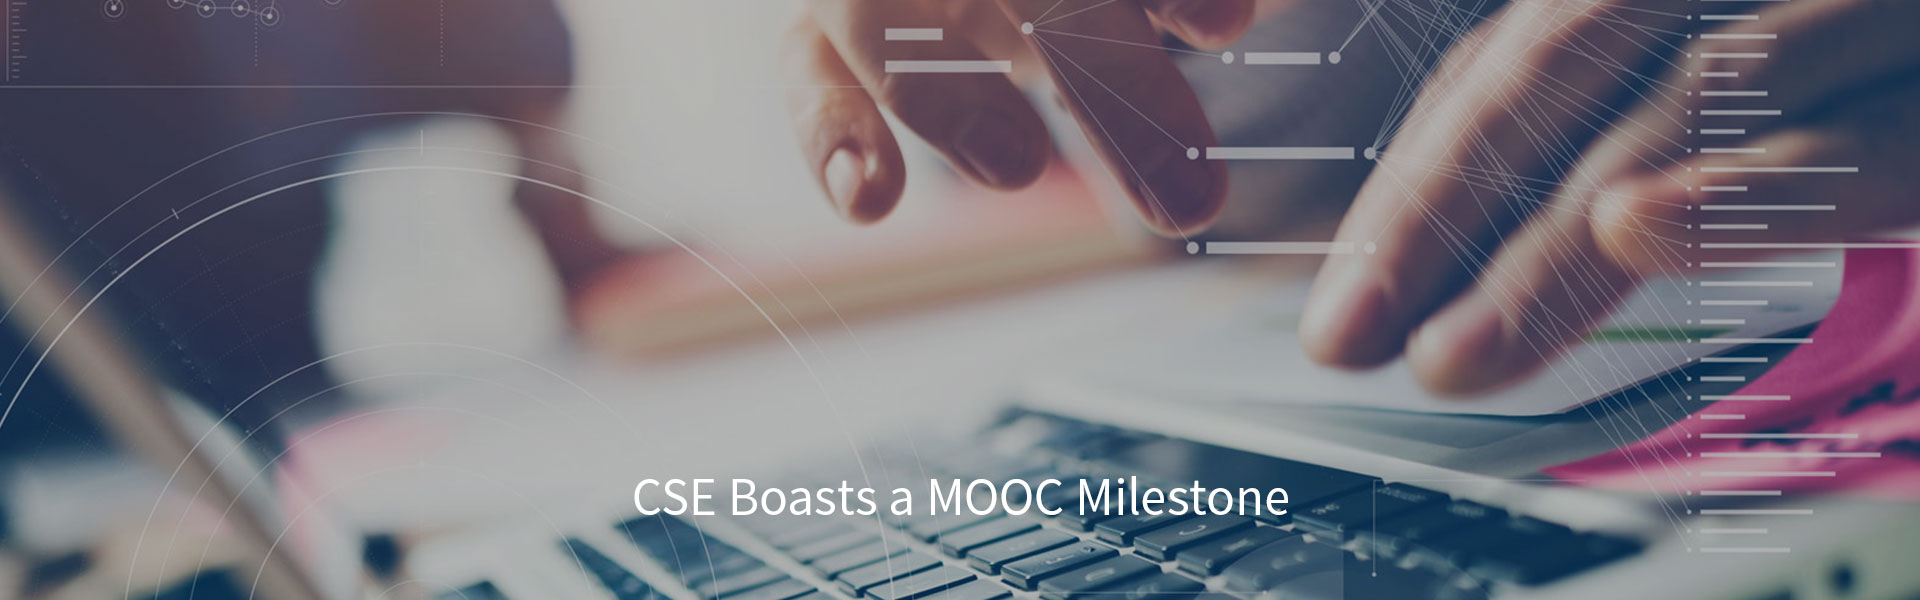 CSE Boasts a MOOC Milestone